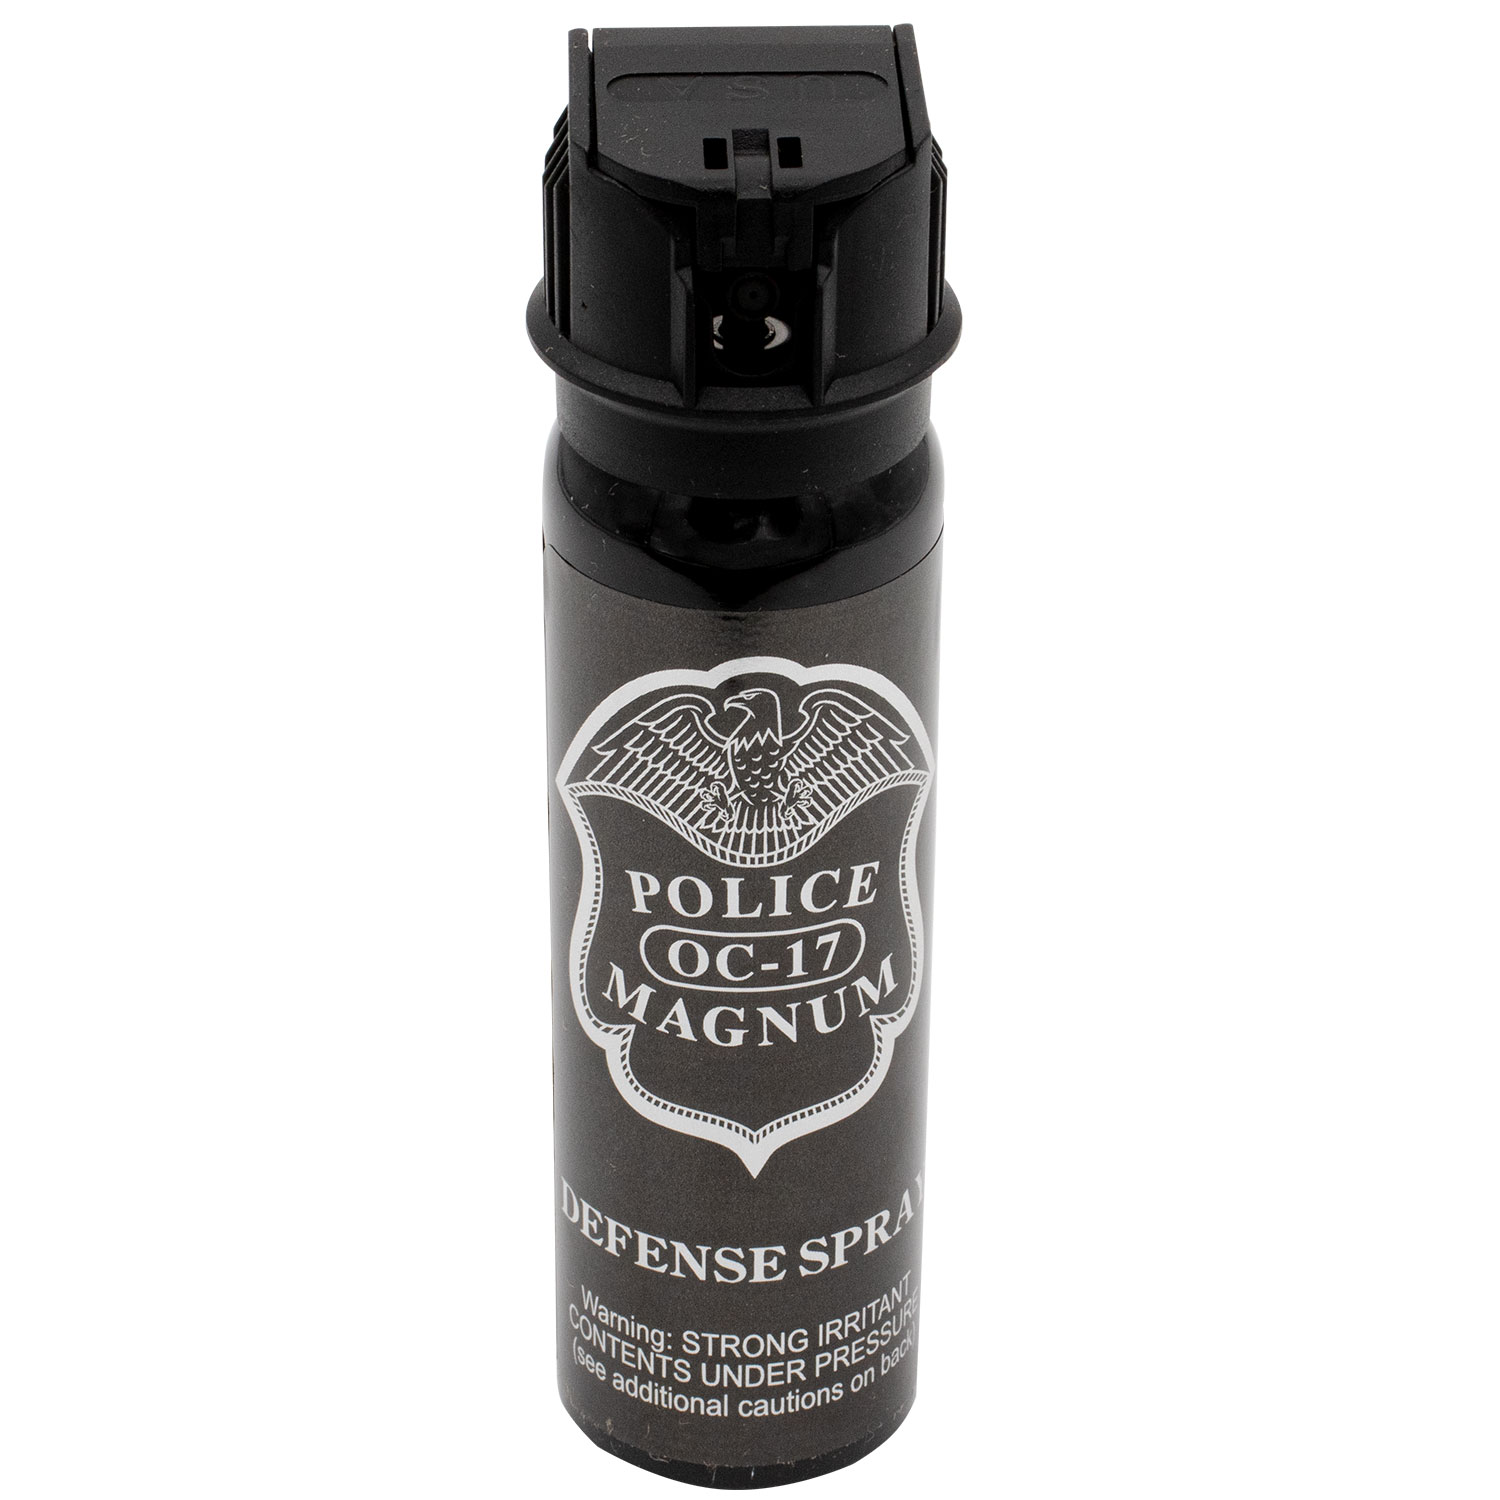 4 Ounce Police Foam Flip Top Pepper Spray